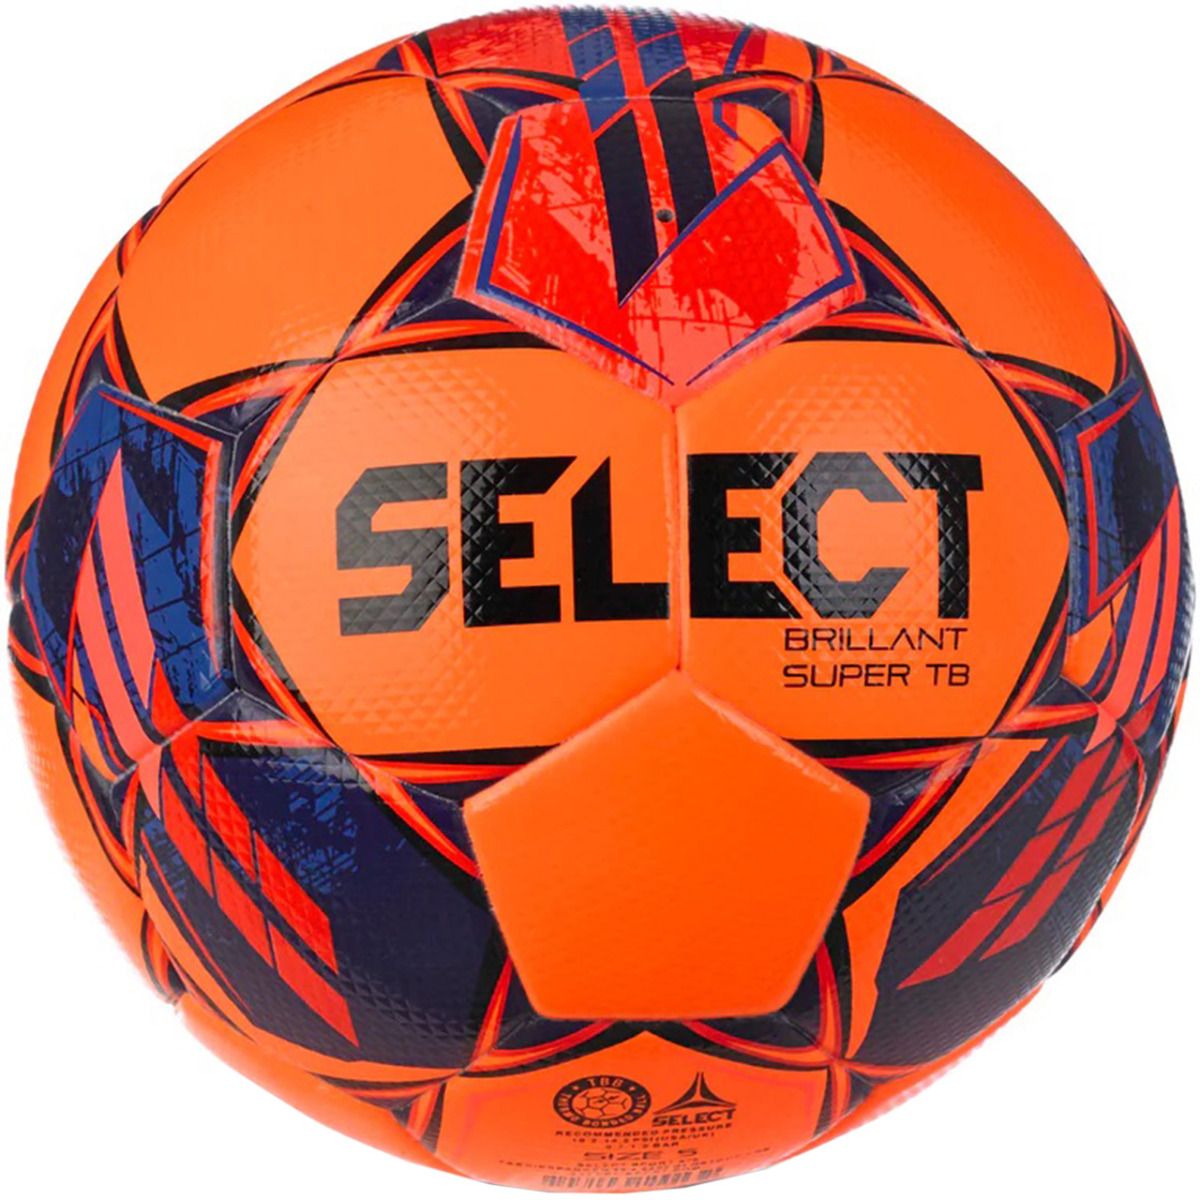 Select Minge de fotbal Brillant Super TB 5 FIFA Quality Pro v23 18328